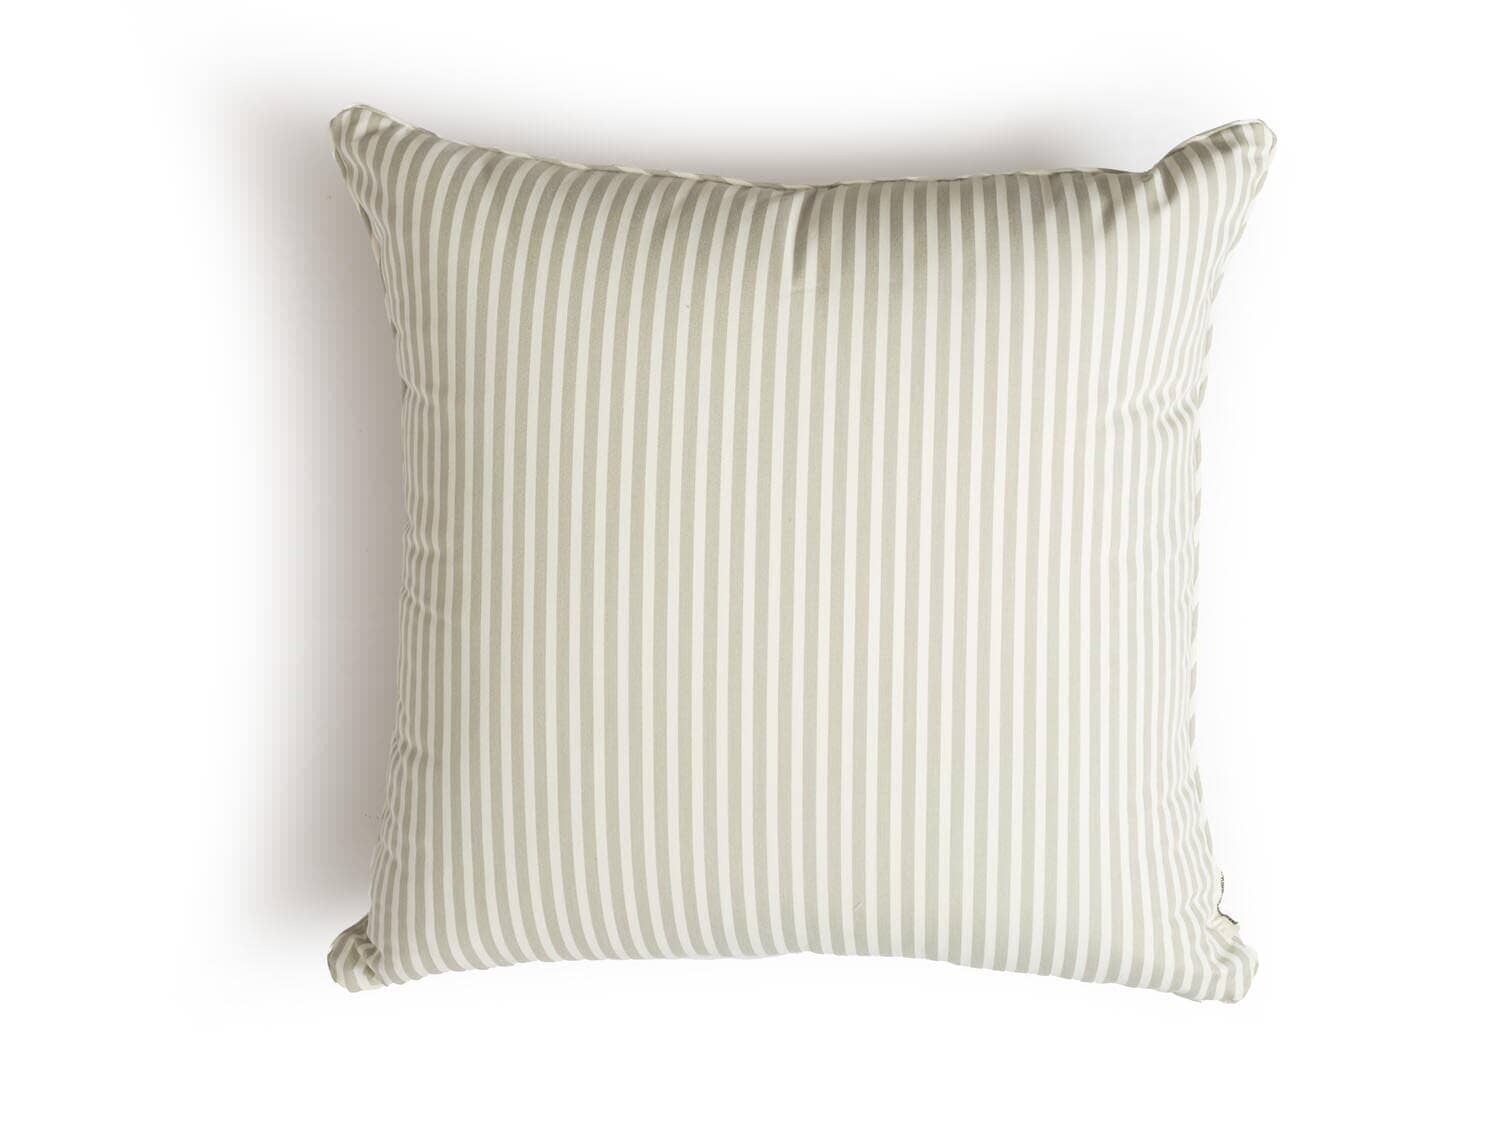 The Euro Throw Pillow - Lauren's Sage Stripe Euro Throw Pillow Business & Pleasure Co Aus 